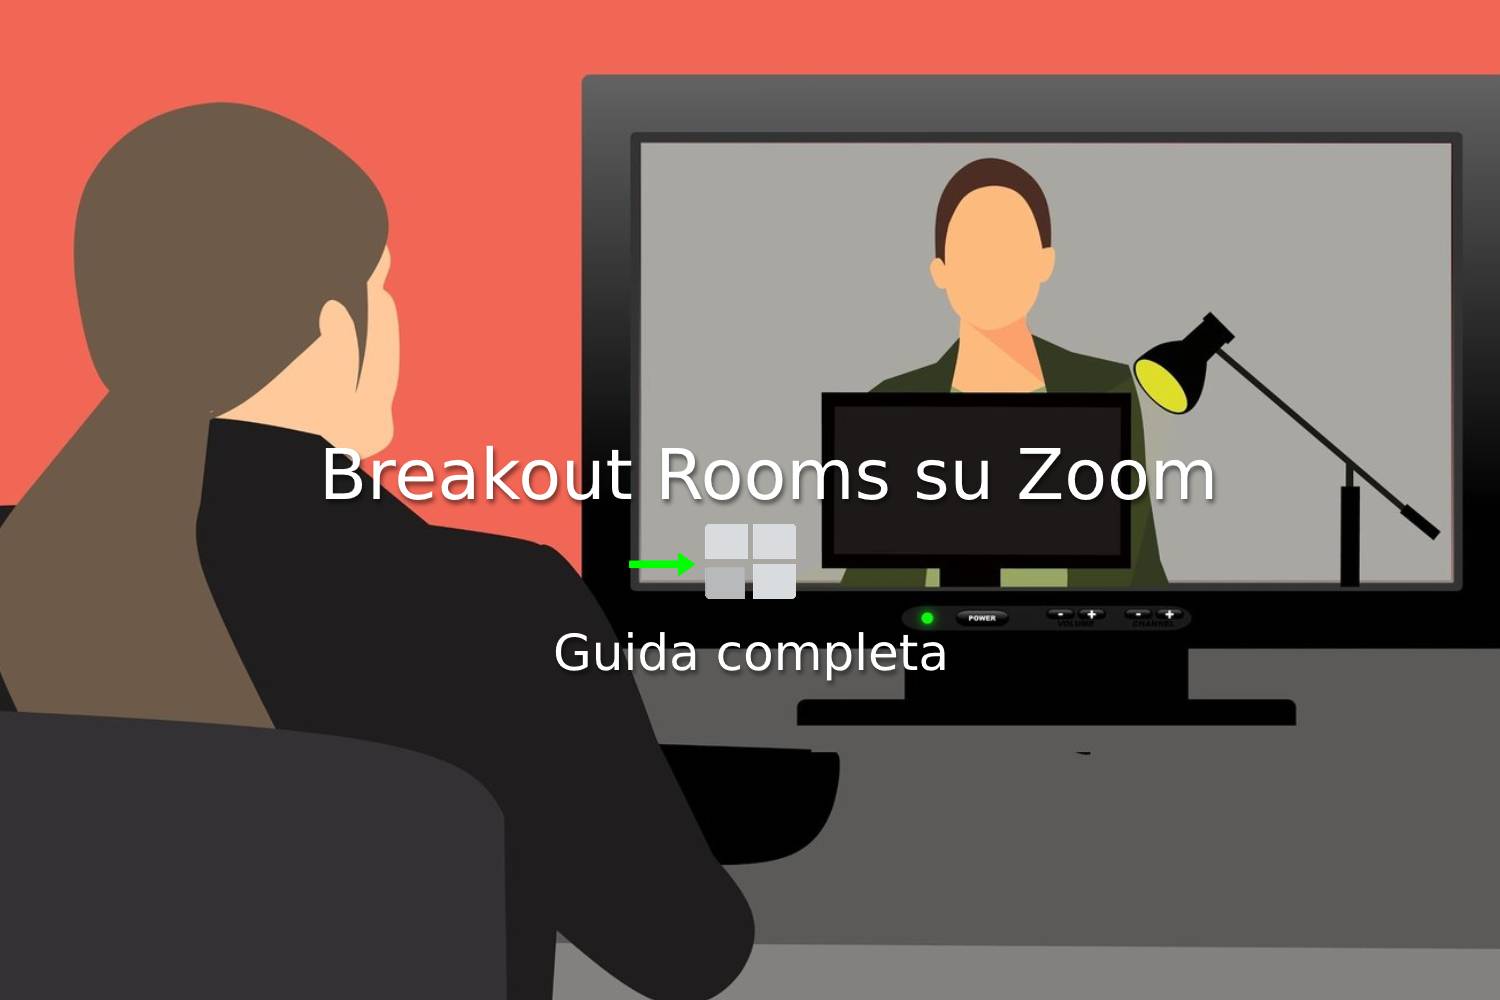 La guida completa alle Breakout Rooms di Zoom